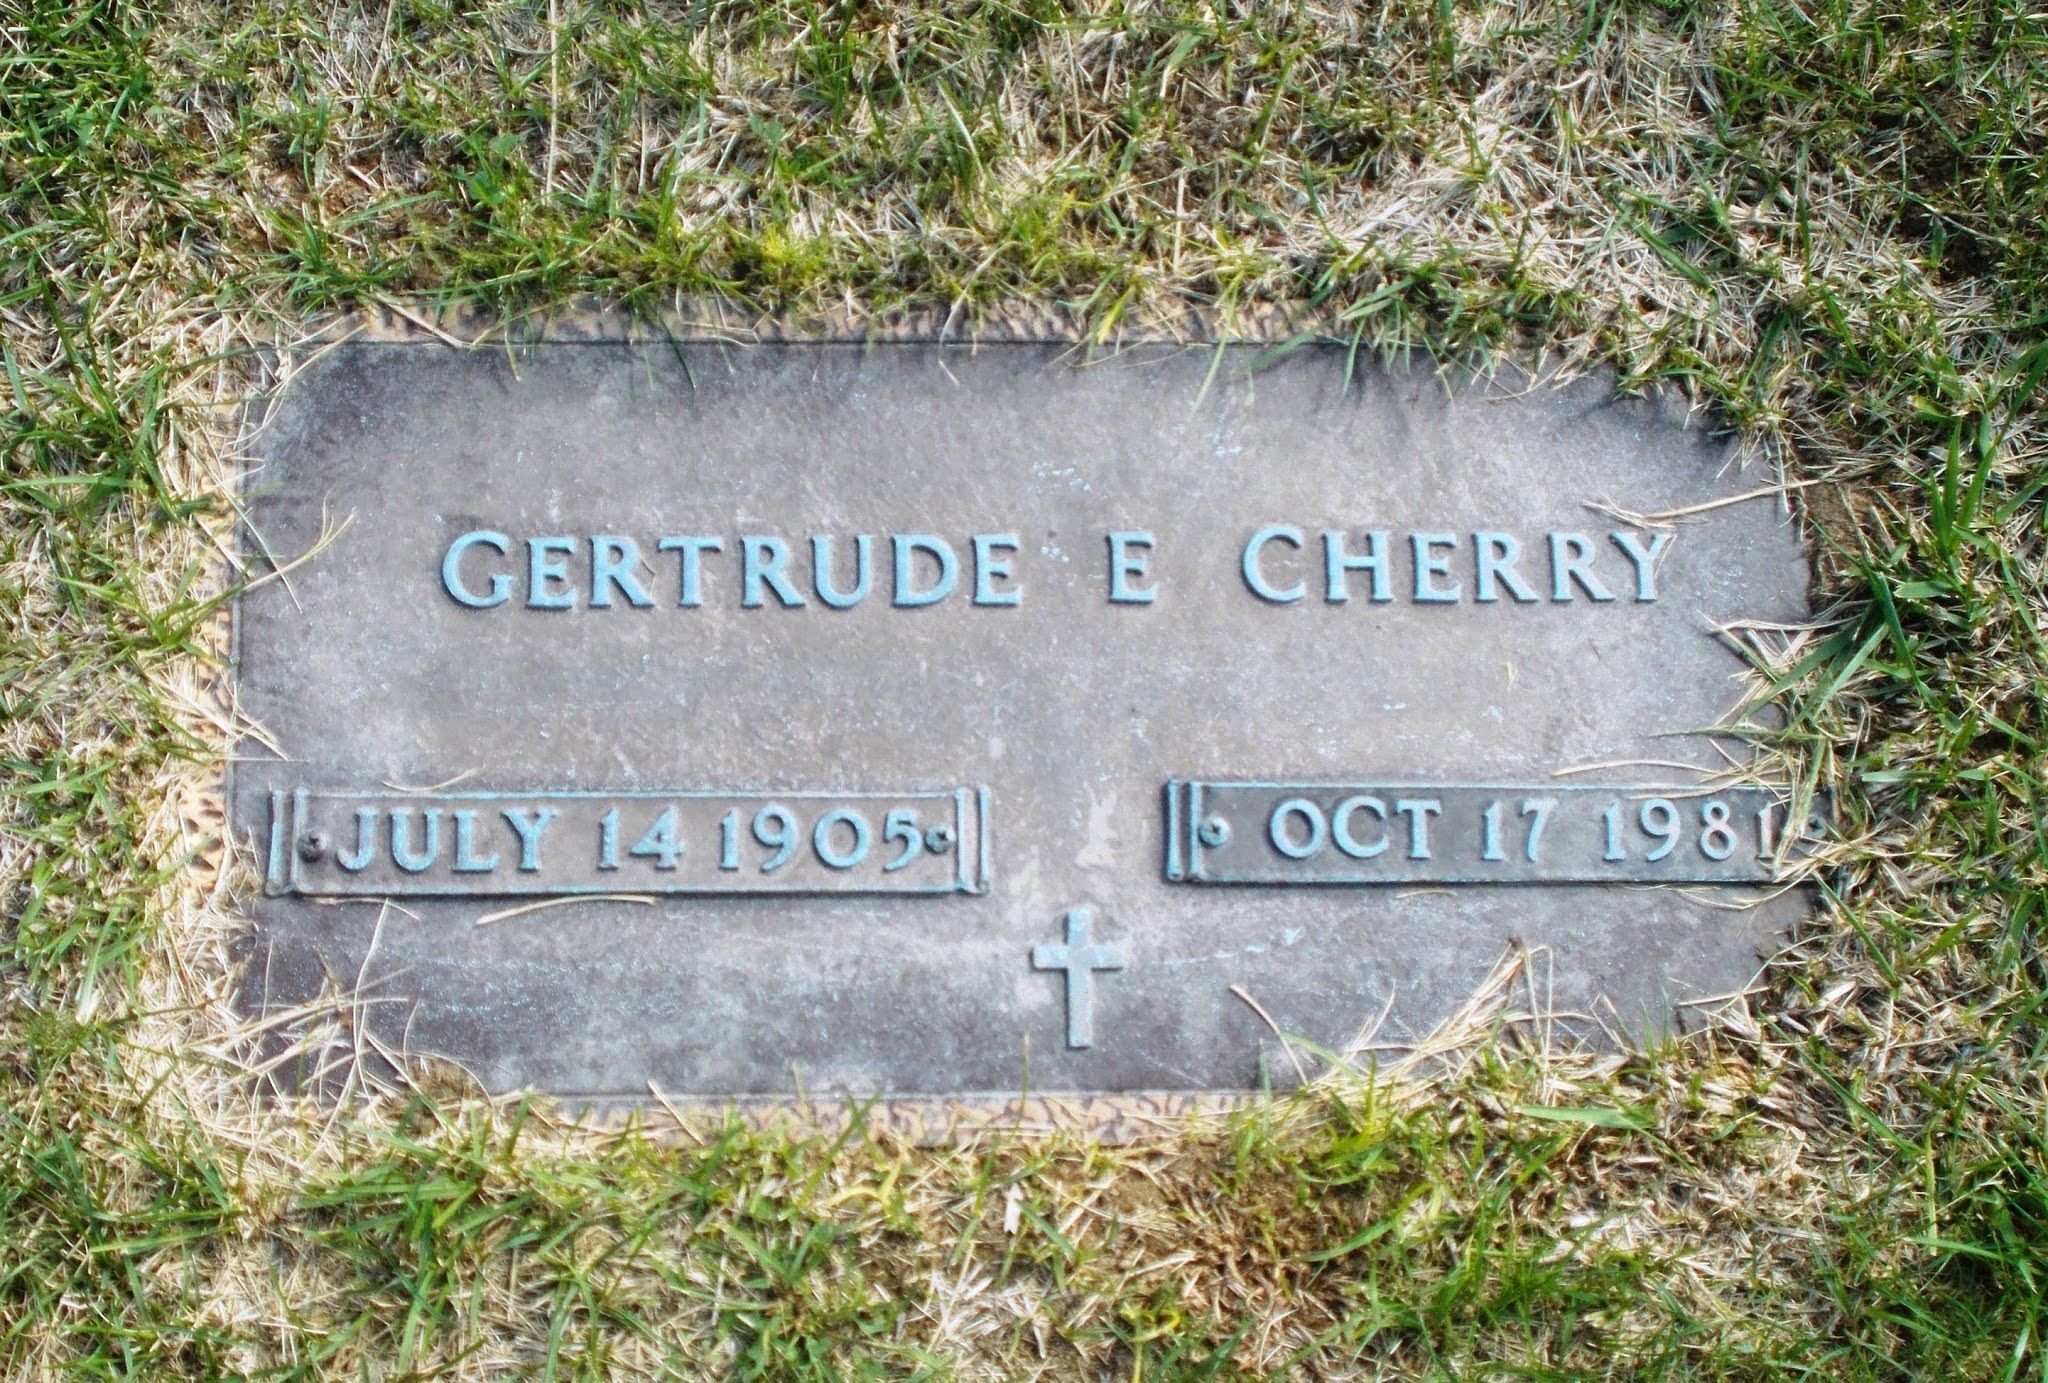 Gertrude E Cherry